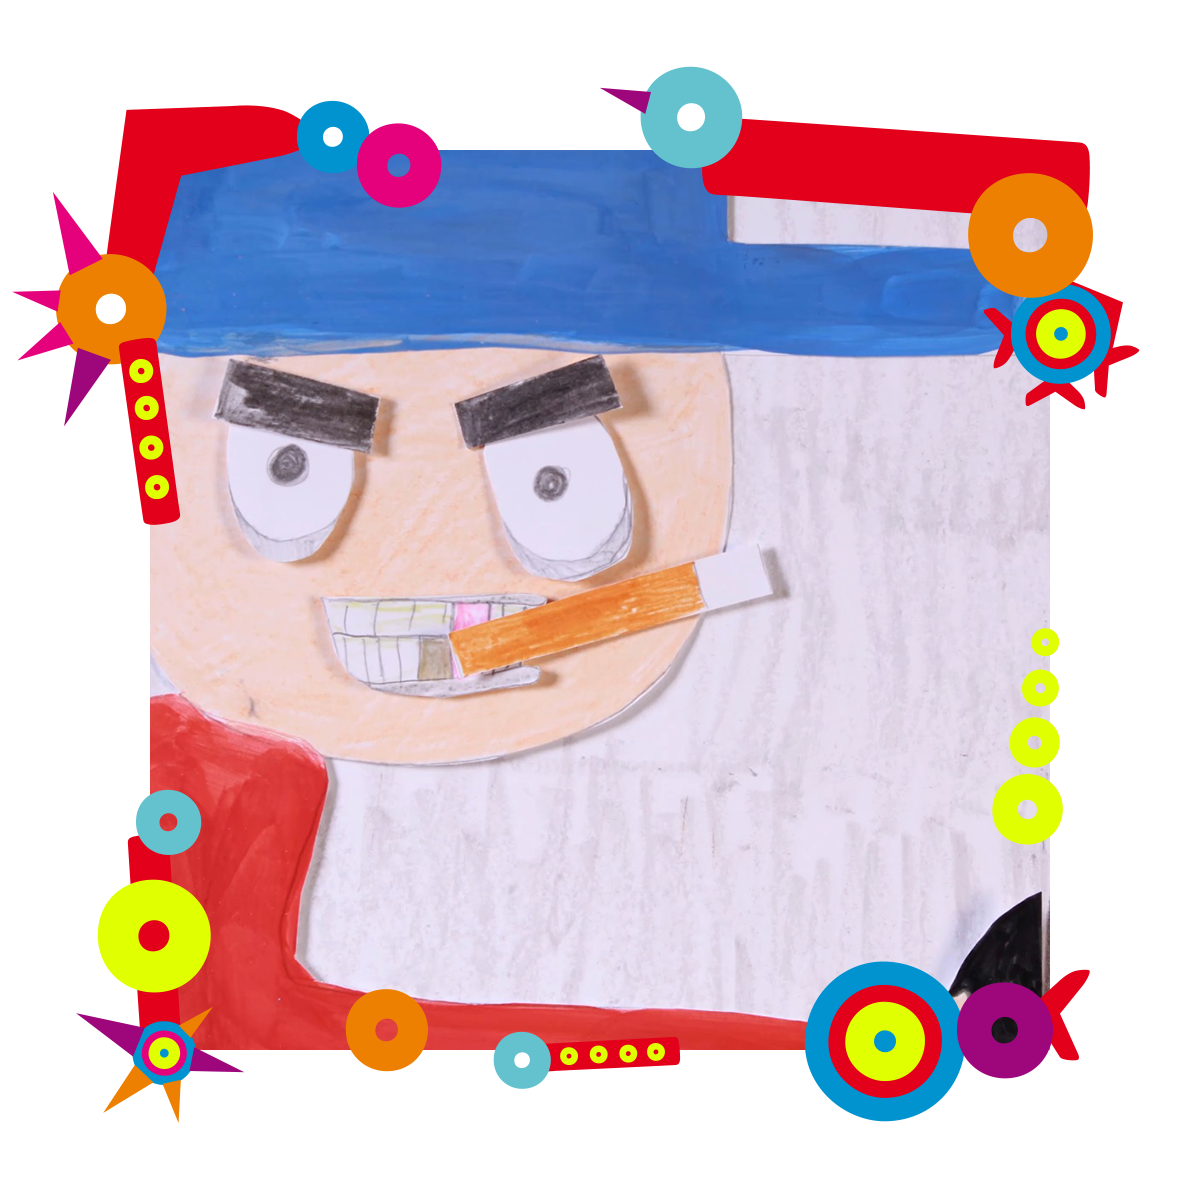 Obrazek stworzony z wyciętych papierowych elementów. Przedstawia postać z papierosem w ustach, czapce z daszkiem na głowie. Ma twarz wykrzywioną w złości. Dookoła obrazka kolorowa ramka.